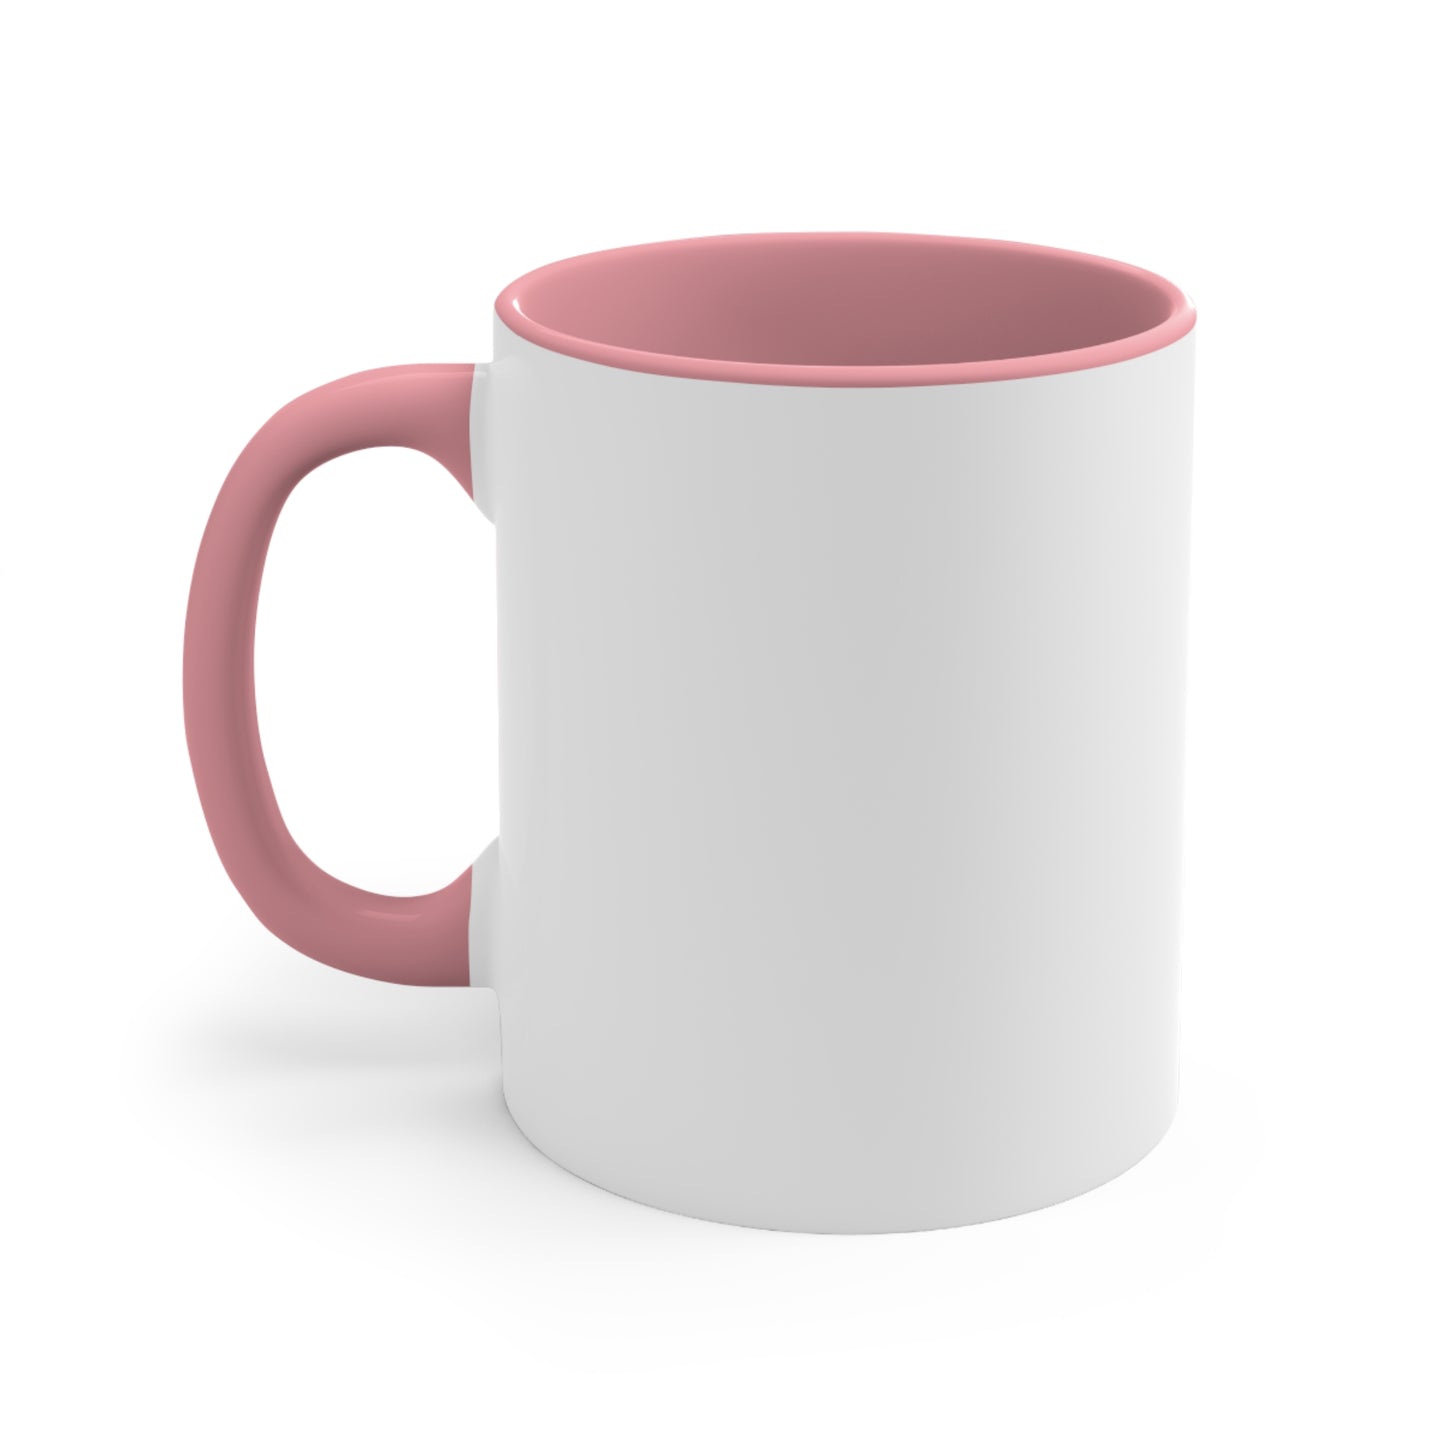 SelfLove Coffee Mug Inspirational Accent Coffee Mug, 11oz